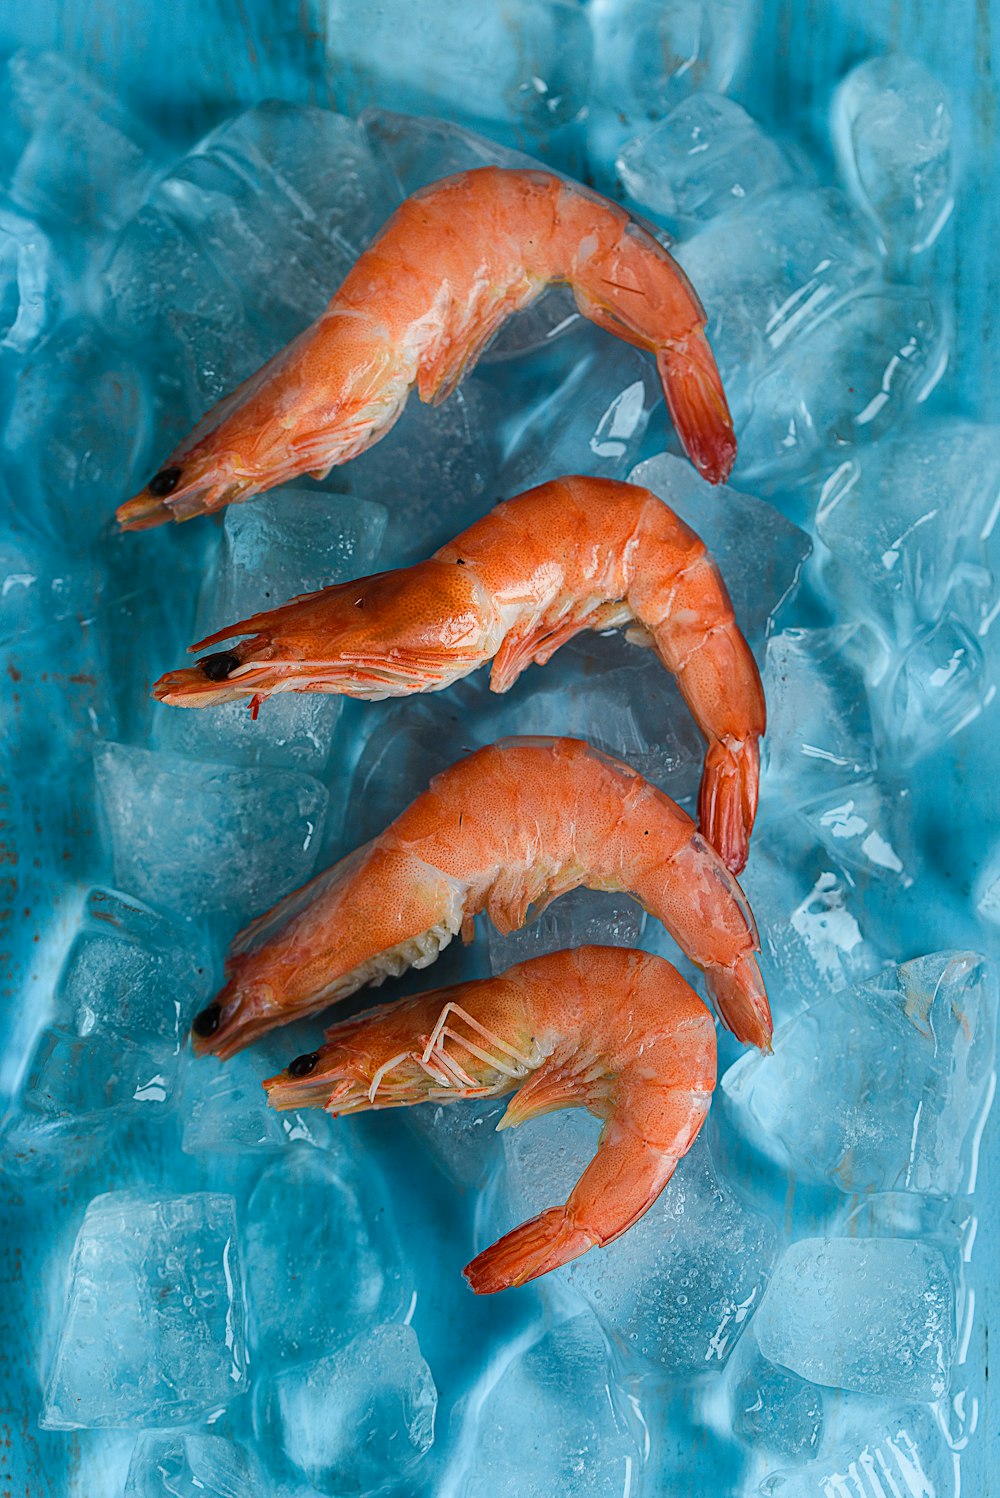 quatre crevettes sur la glace